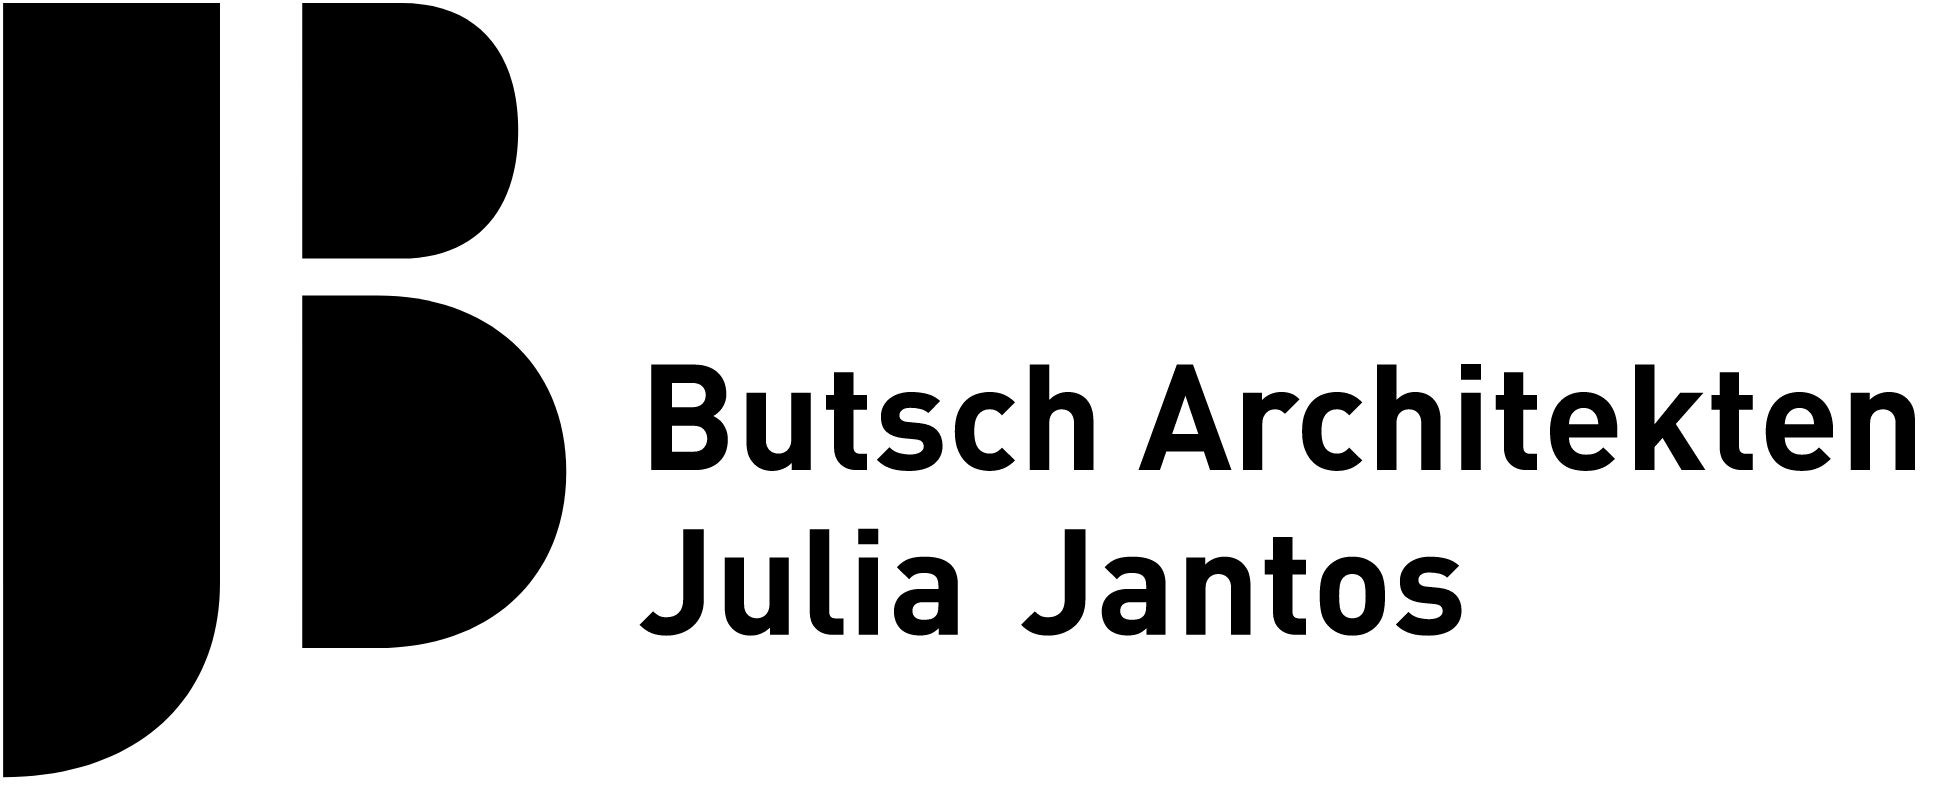 BUTSCH ARCHITEKTEN - Julia Jantos